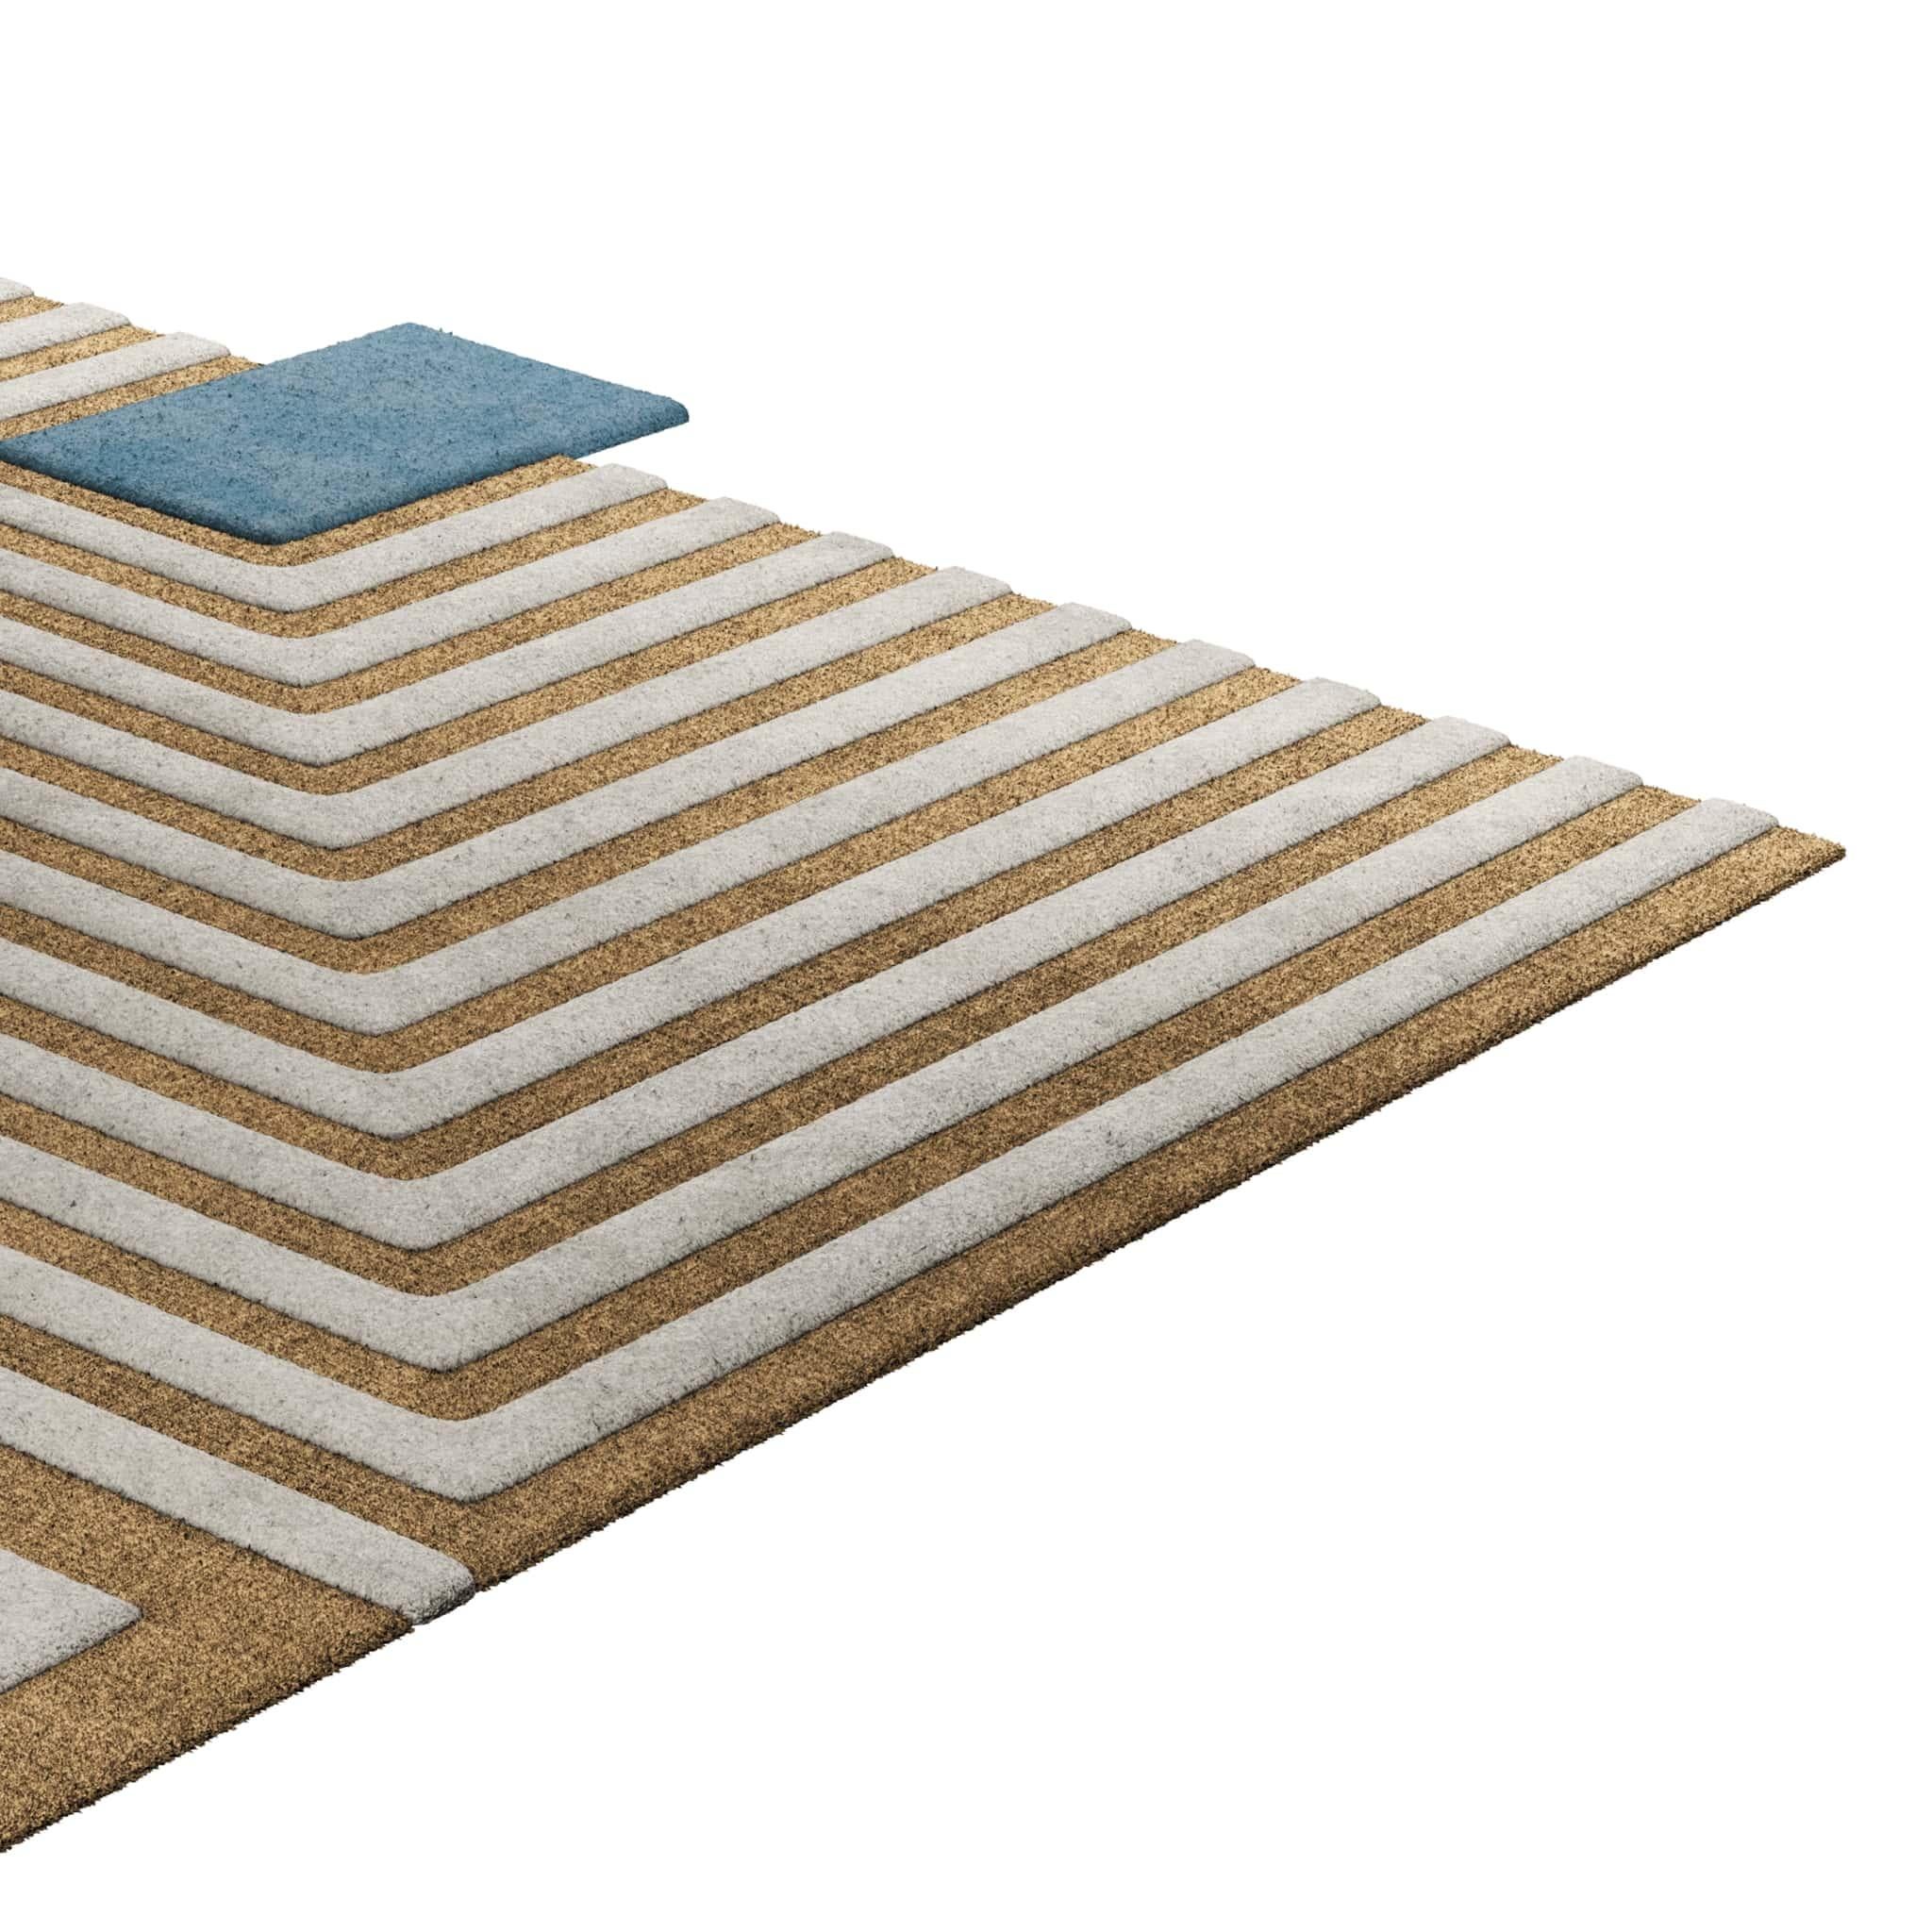 Tapis Retro #014 ist ein Retro-Teppich mit einer unregelmäßigen Form und zeitlosen Farben. Inspiriert von architektonischen Linien, setzt dieser geometrische Teppich in jedem Wohnbereich ein Zeichen. 

Mit einer 3D-Tufting-Technik, die Schnitt- und